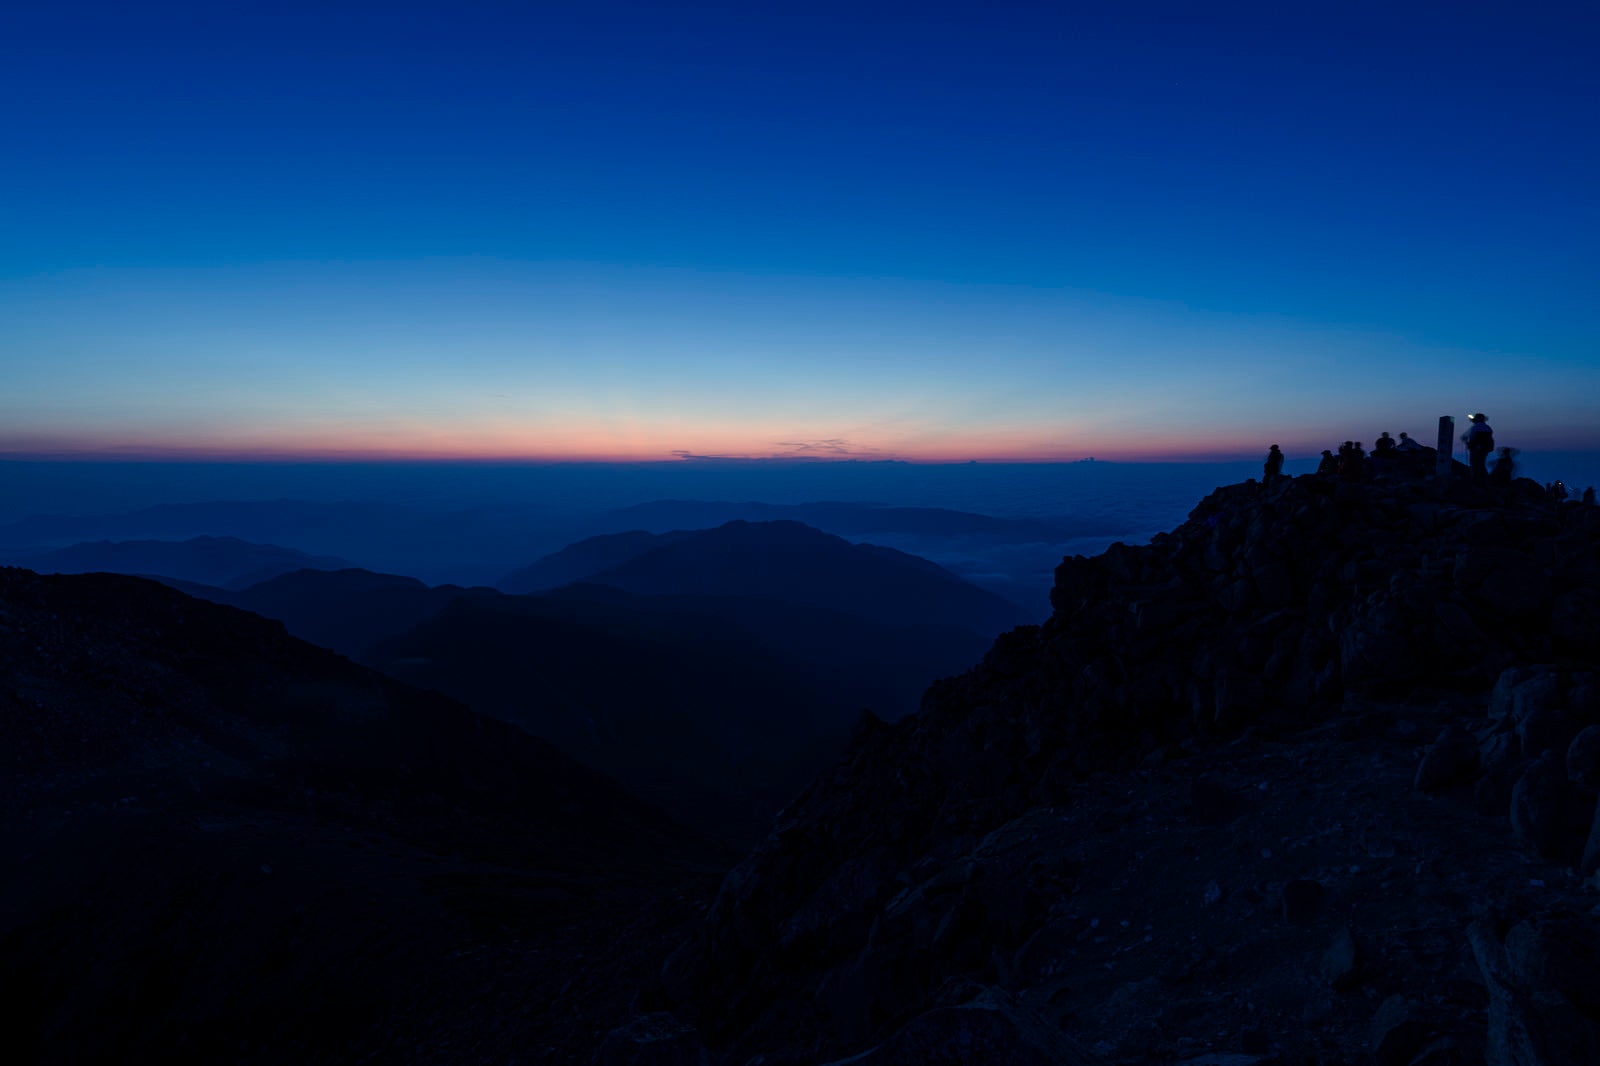 「白山山頂で夜明けを待つ登山者たち」の写真